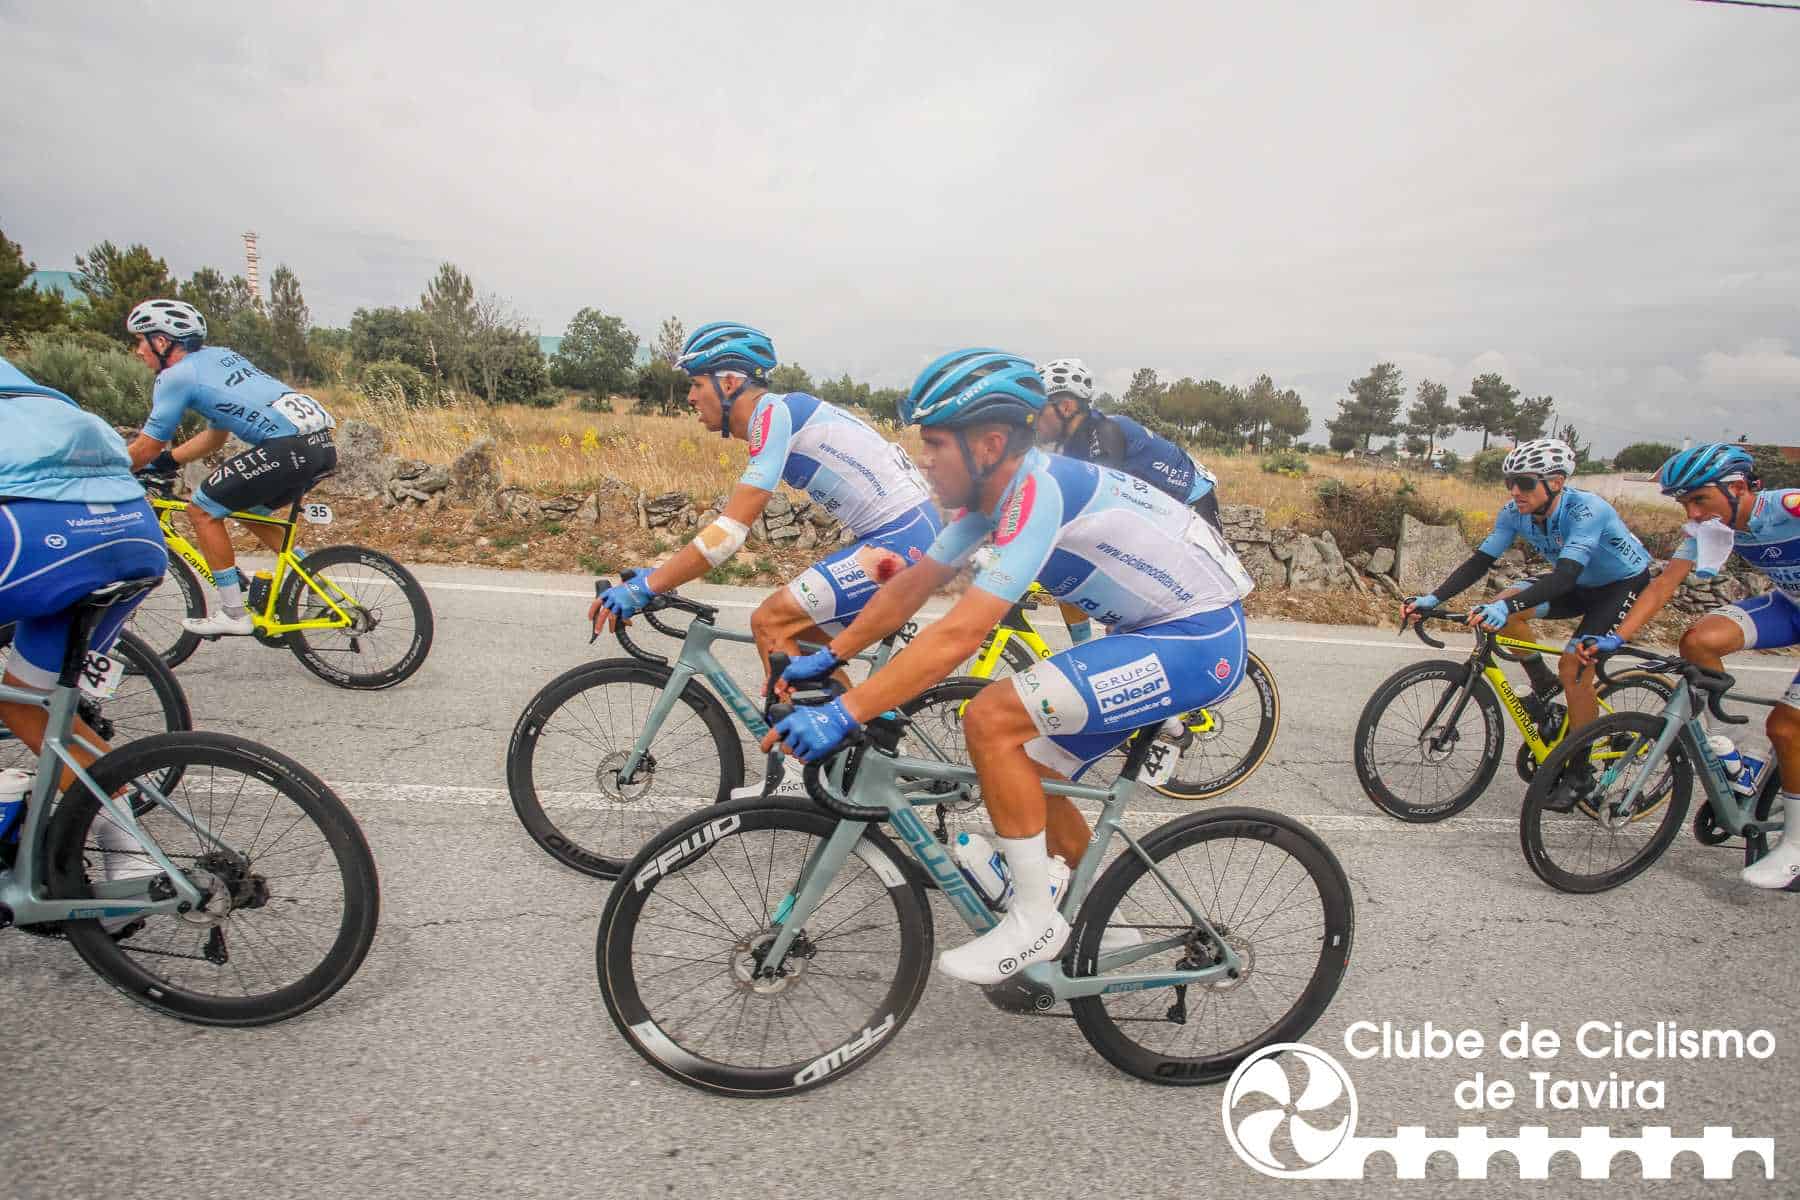 Clube de Ciclismo de Tavira - Grande Prémio Internacional Beiras e Serra da Estrela 202346